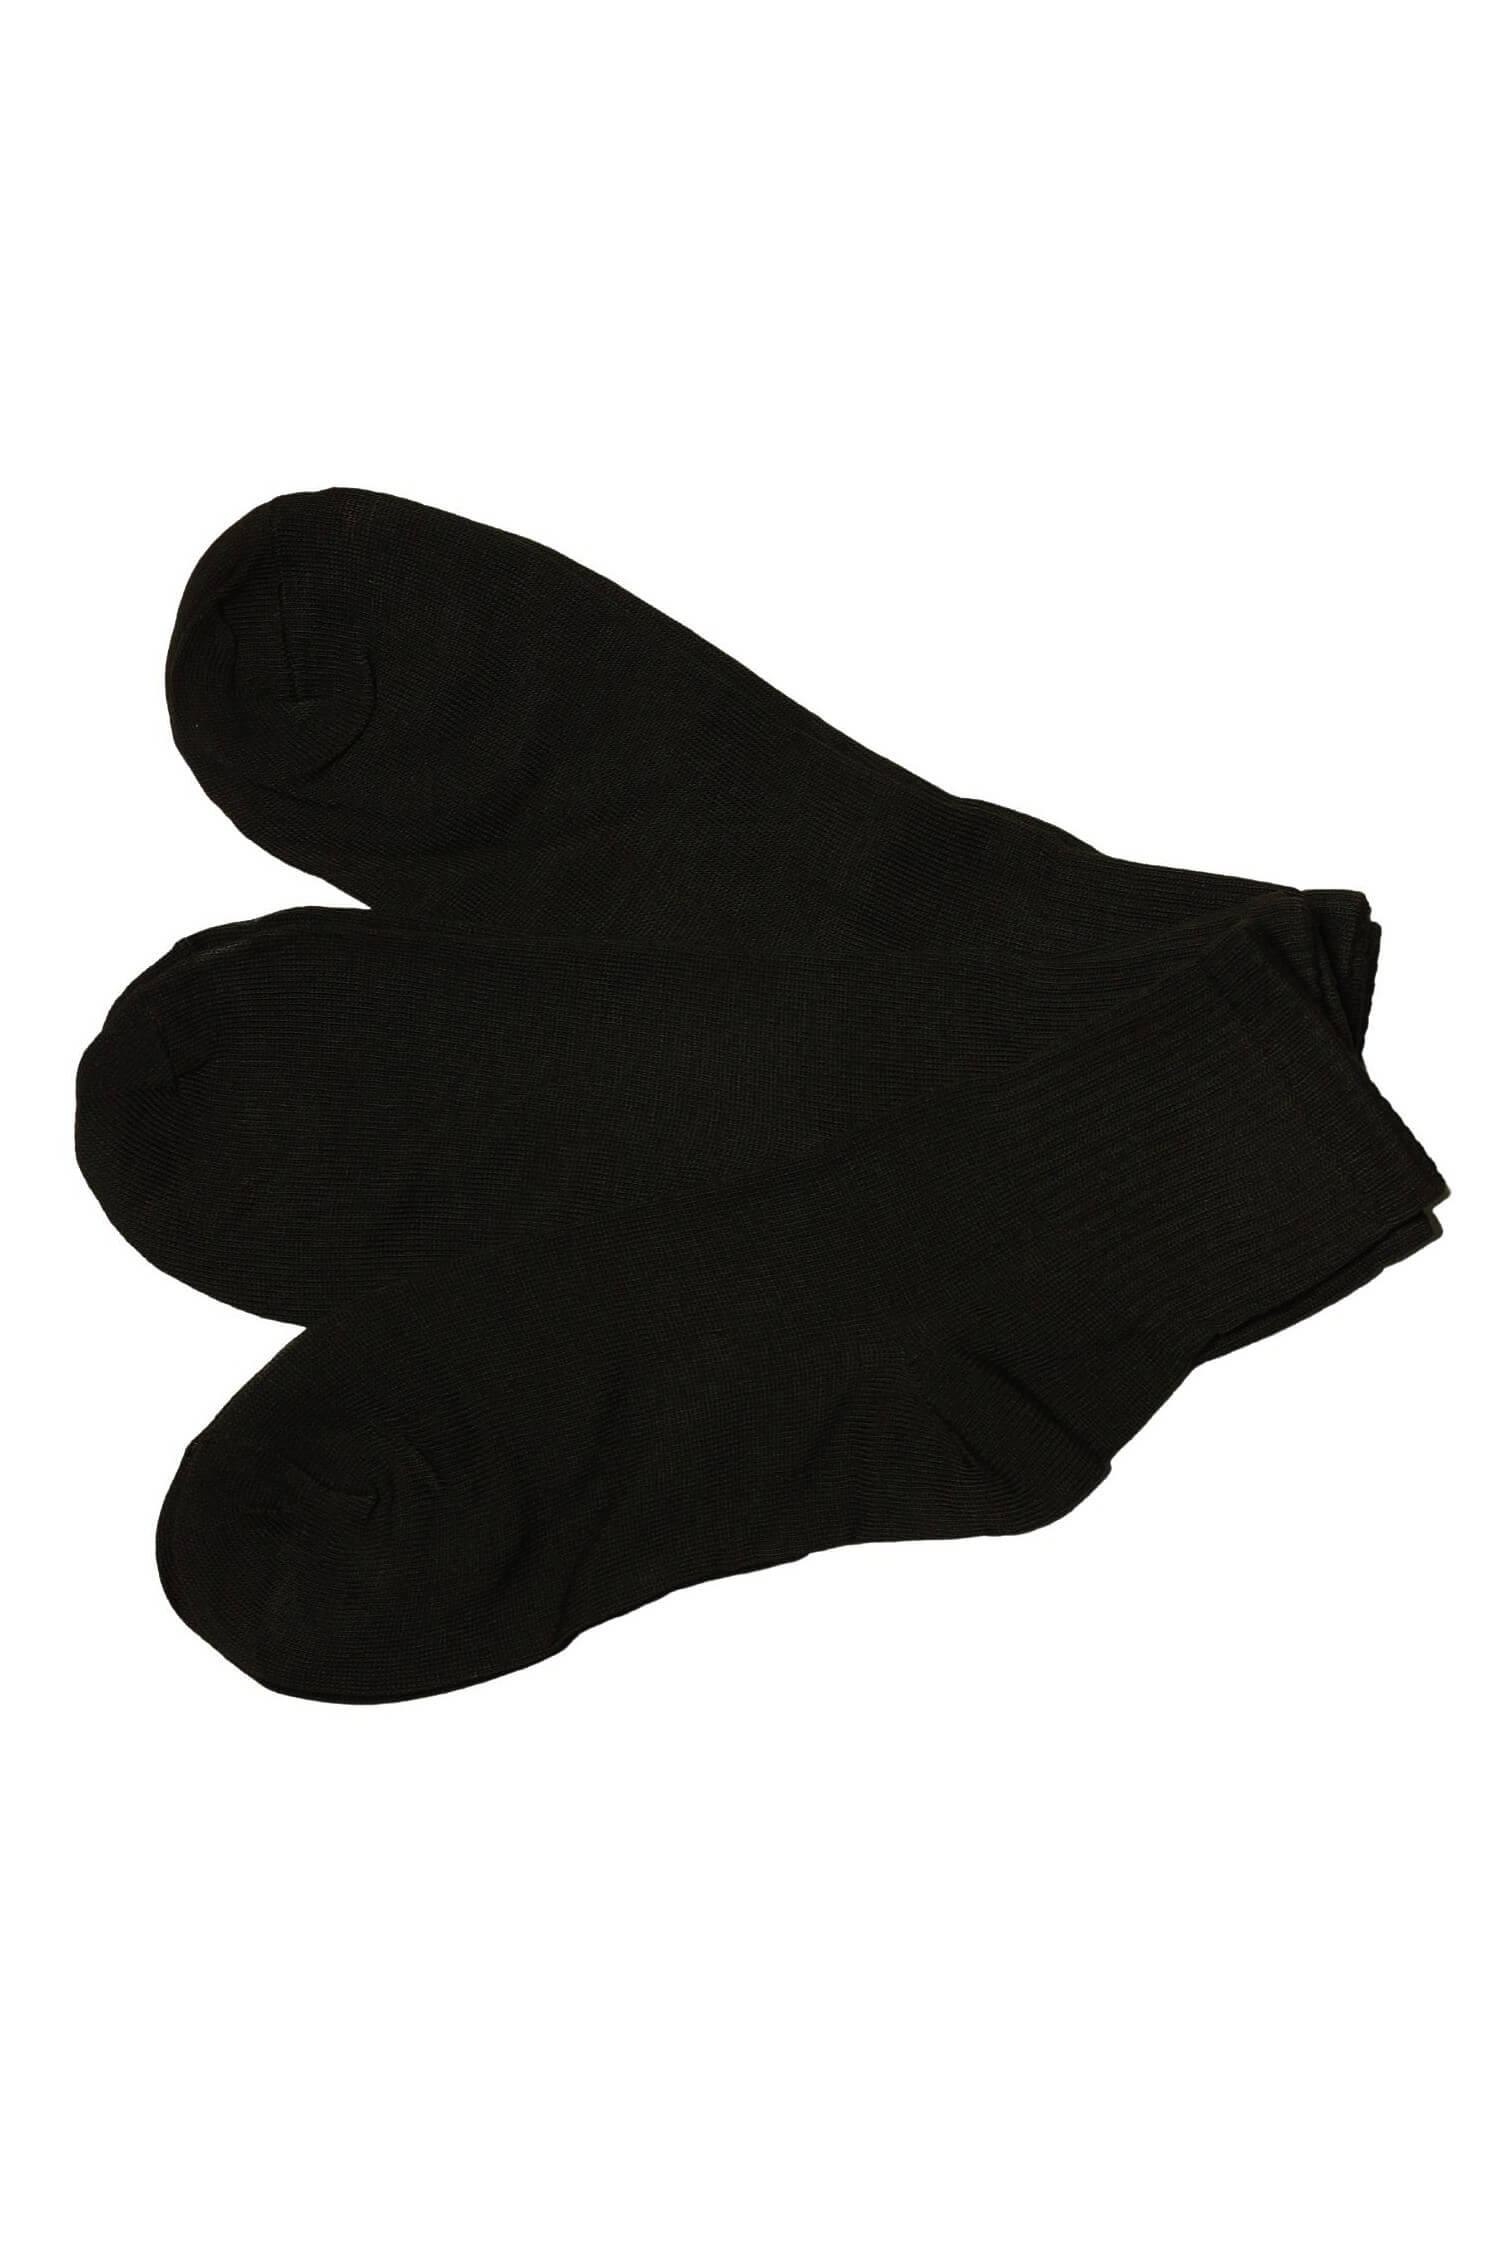 Dámské ponožky bavlněné ZW-401C - 3 páry 35-38 černá